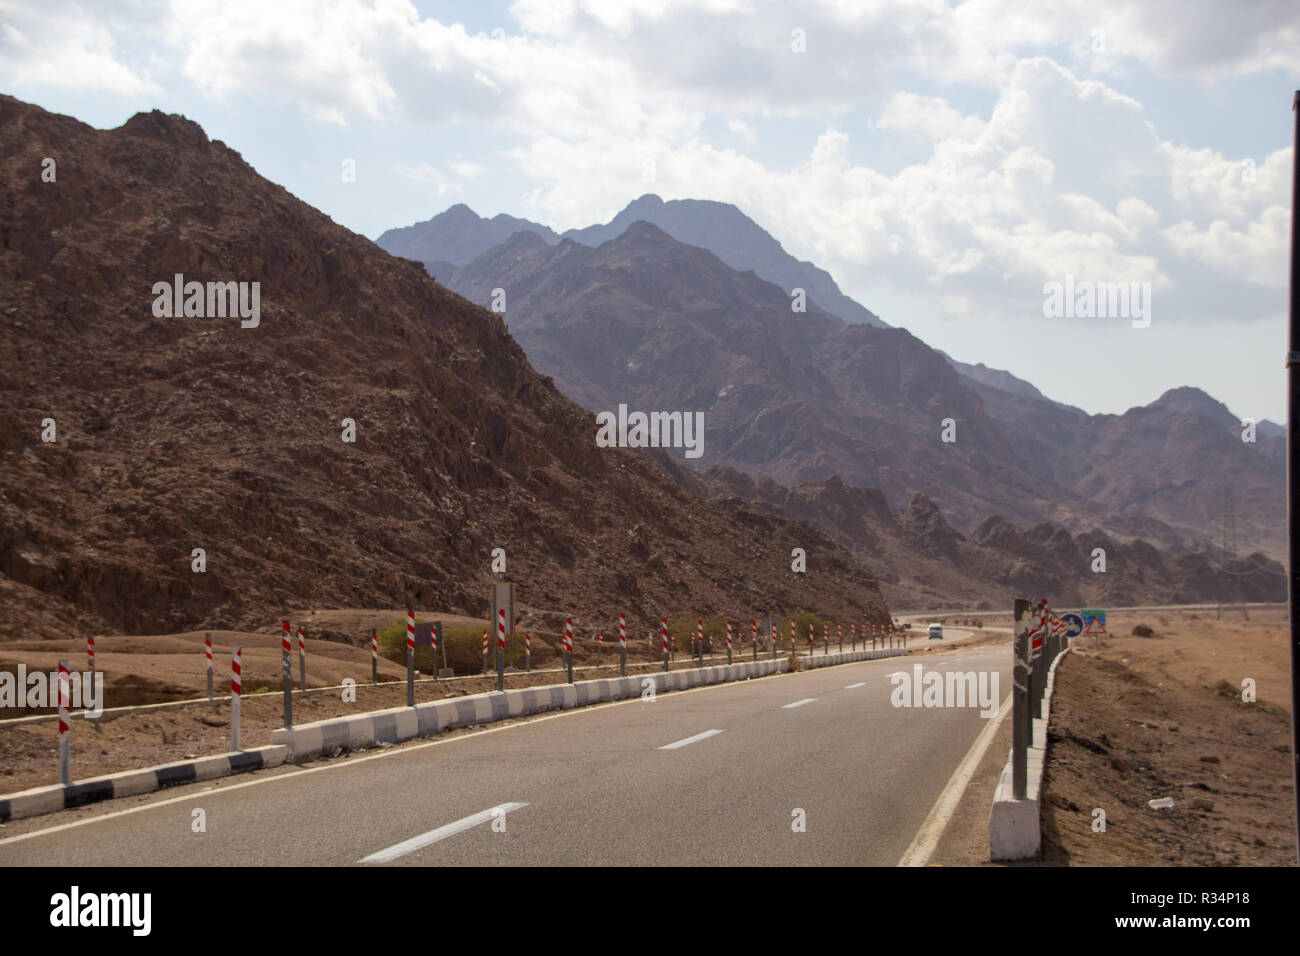 Sinaa, Egypte - Novembre 4, 2018 :- photo pour la route dans la ville égyptienne de Sinaa, montrant les routes et les montagnes, les nuages et les plateaux. Banque D'Images